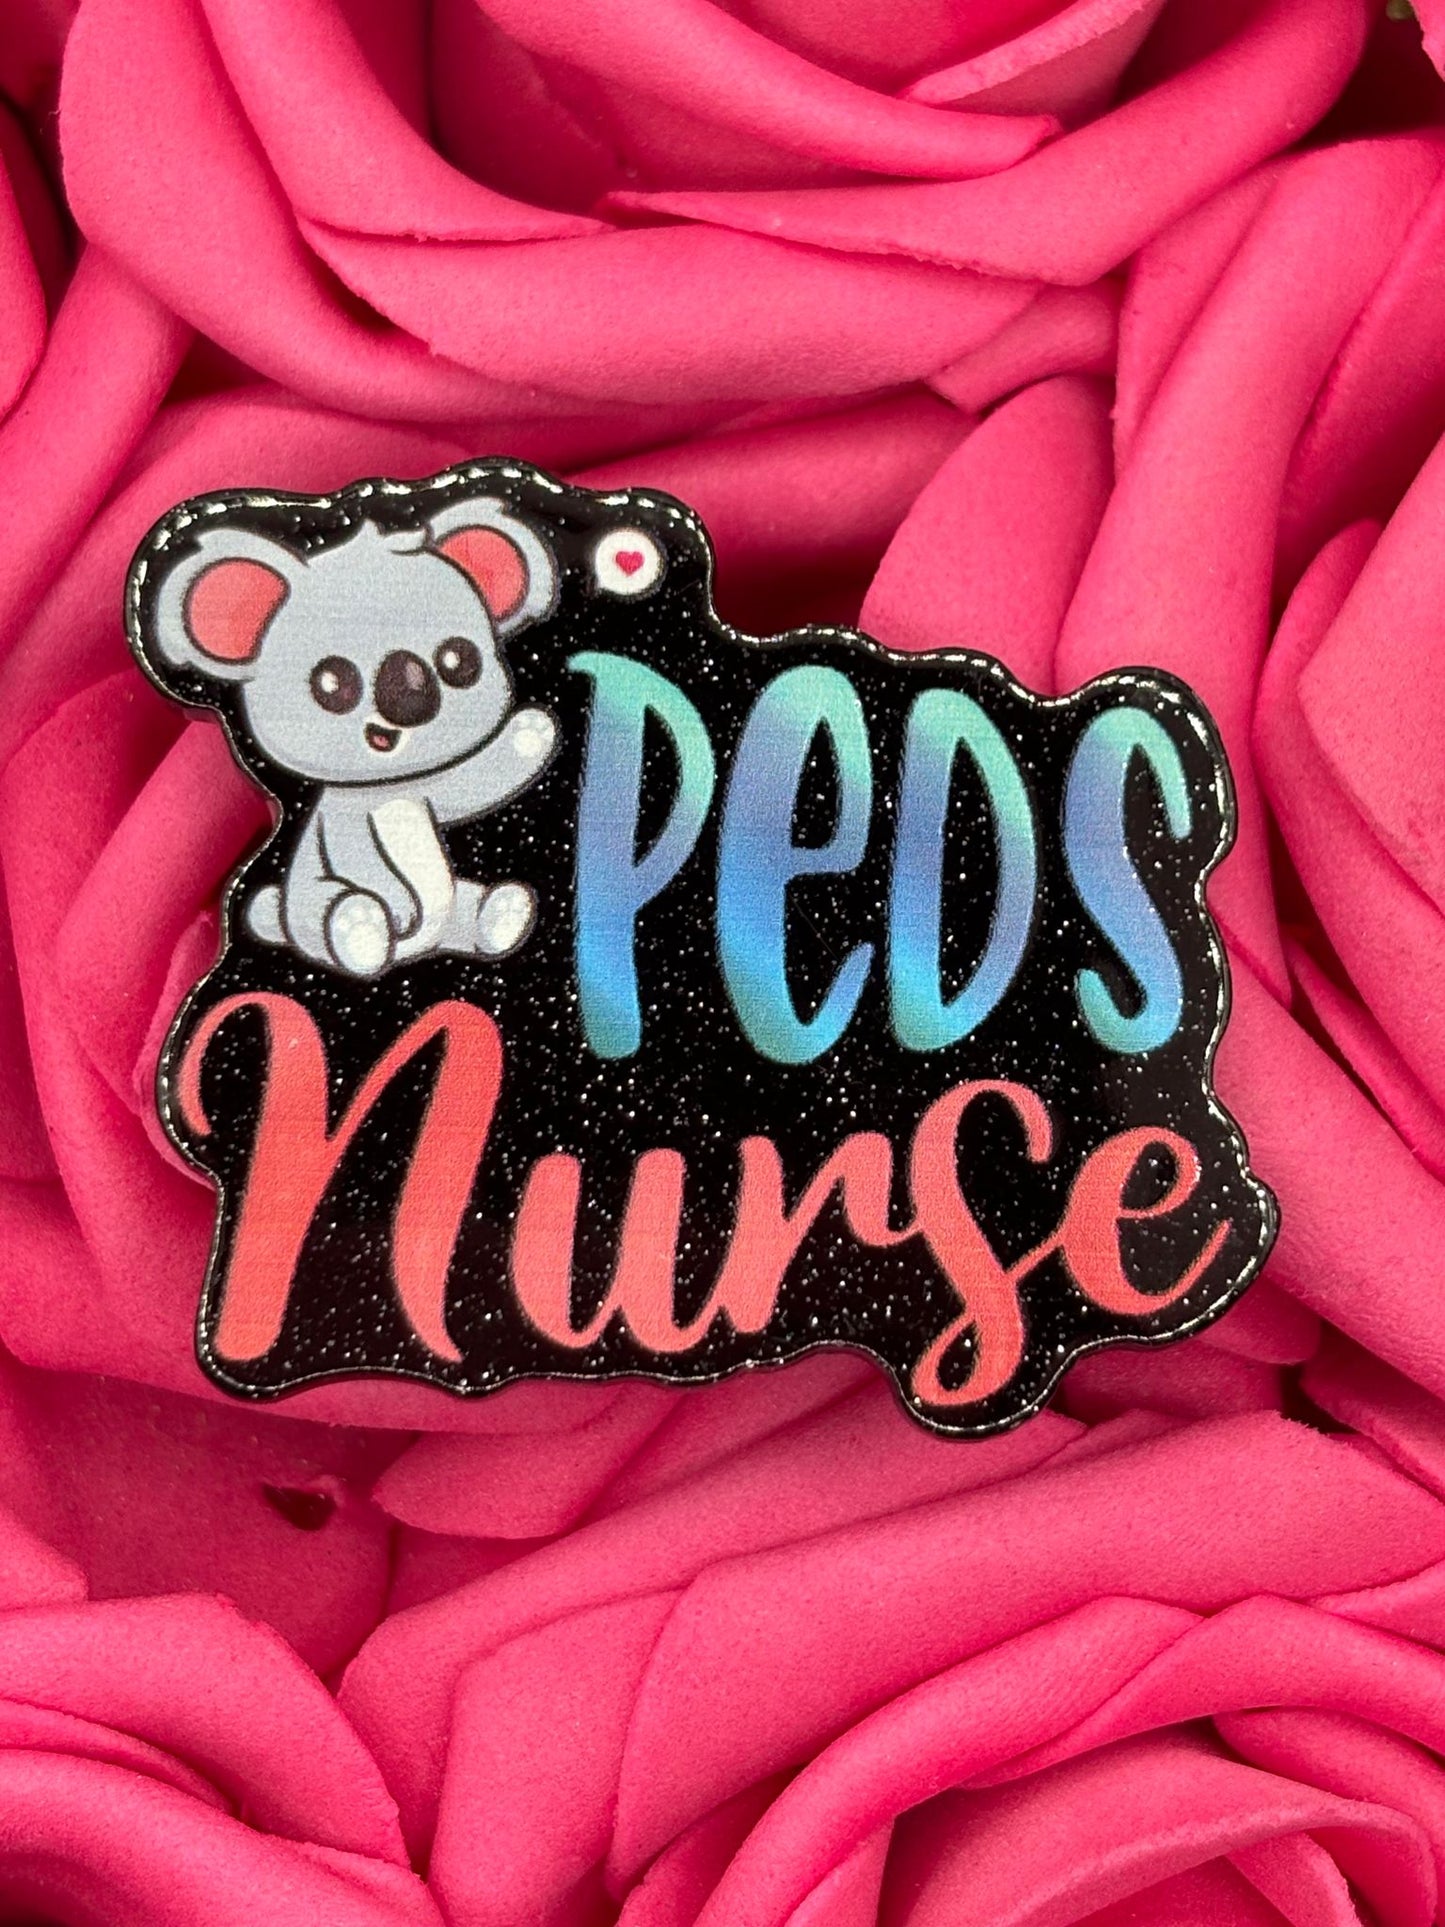 #2581 Peds Nurse